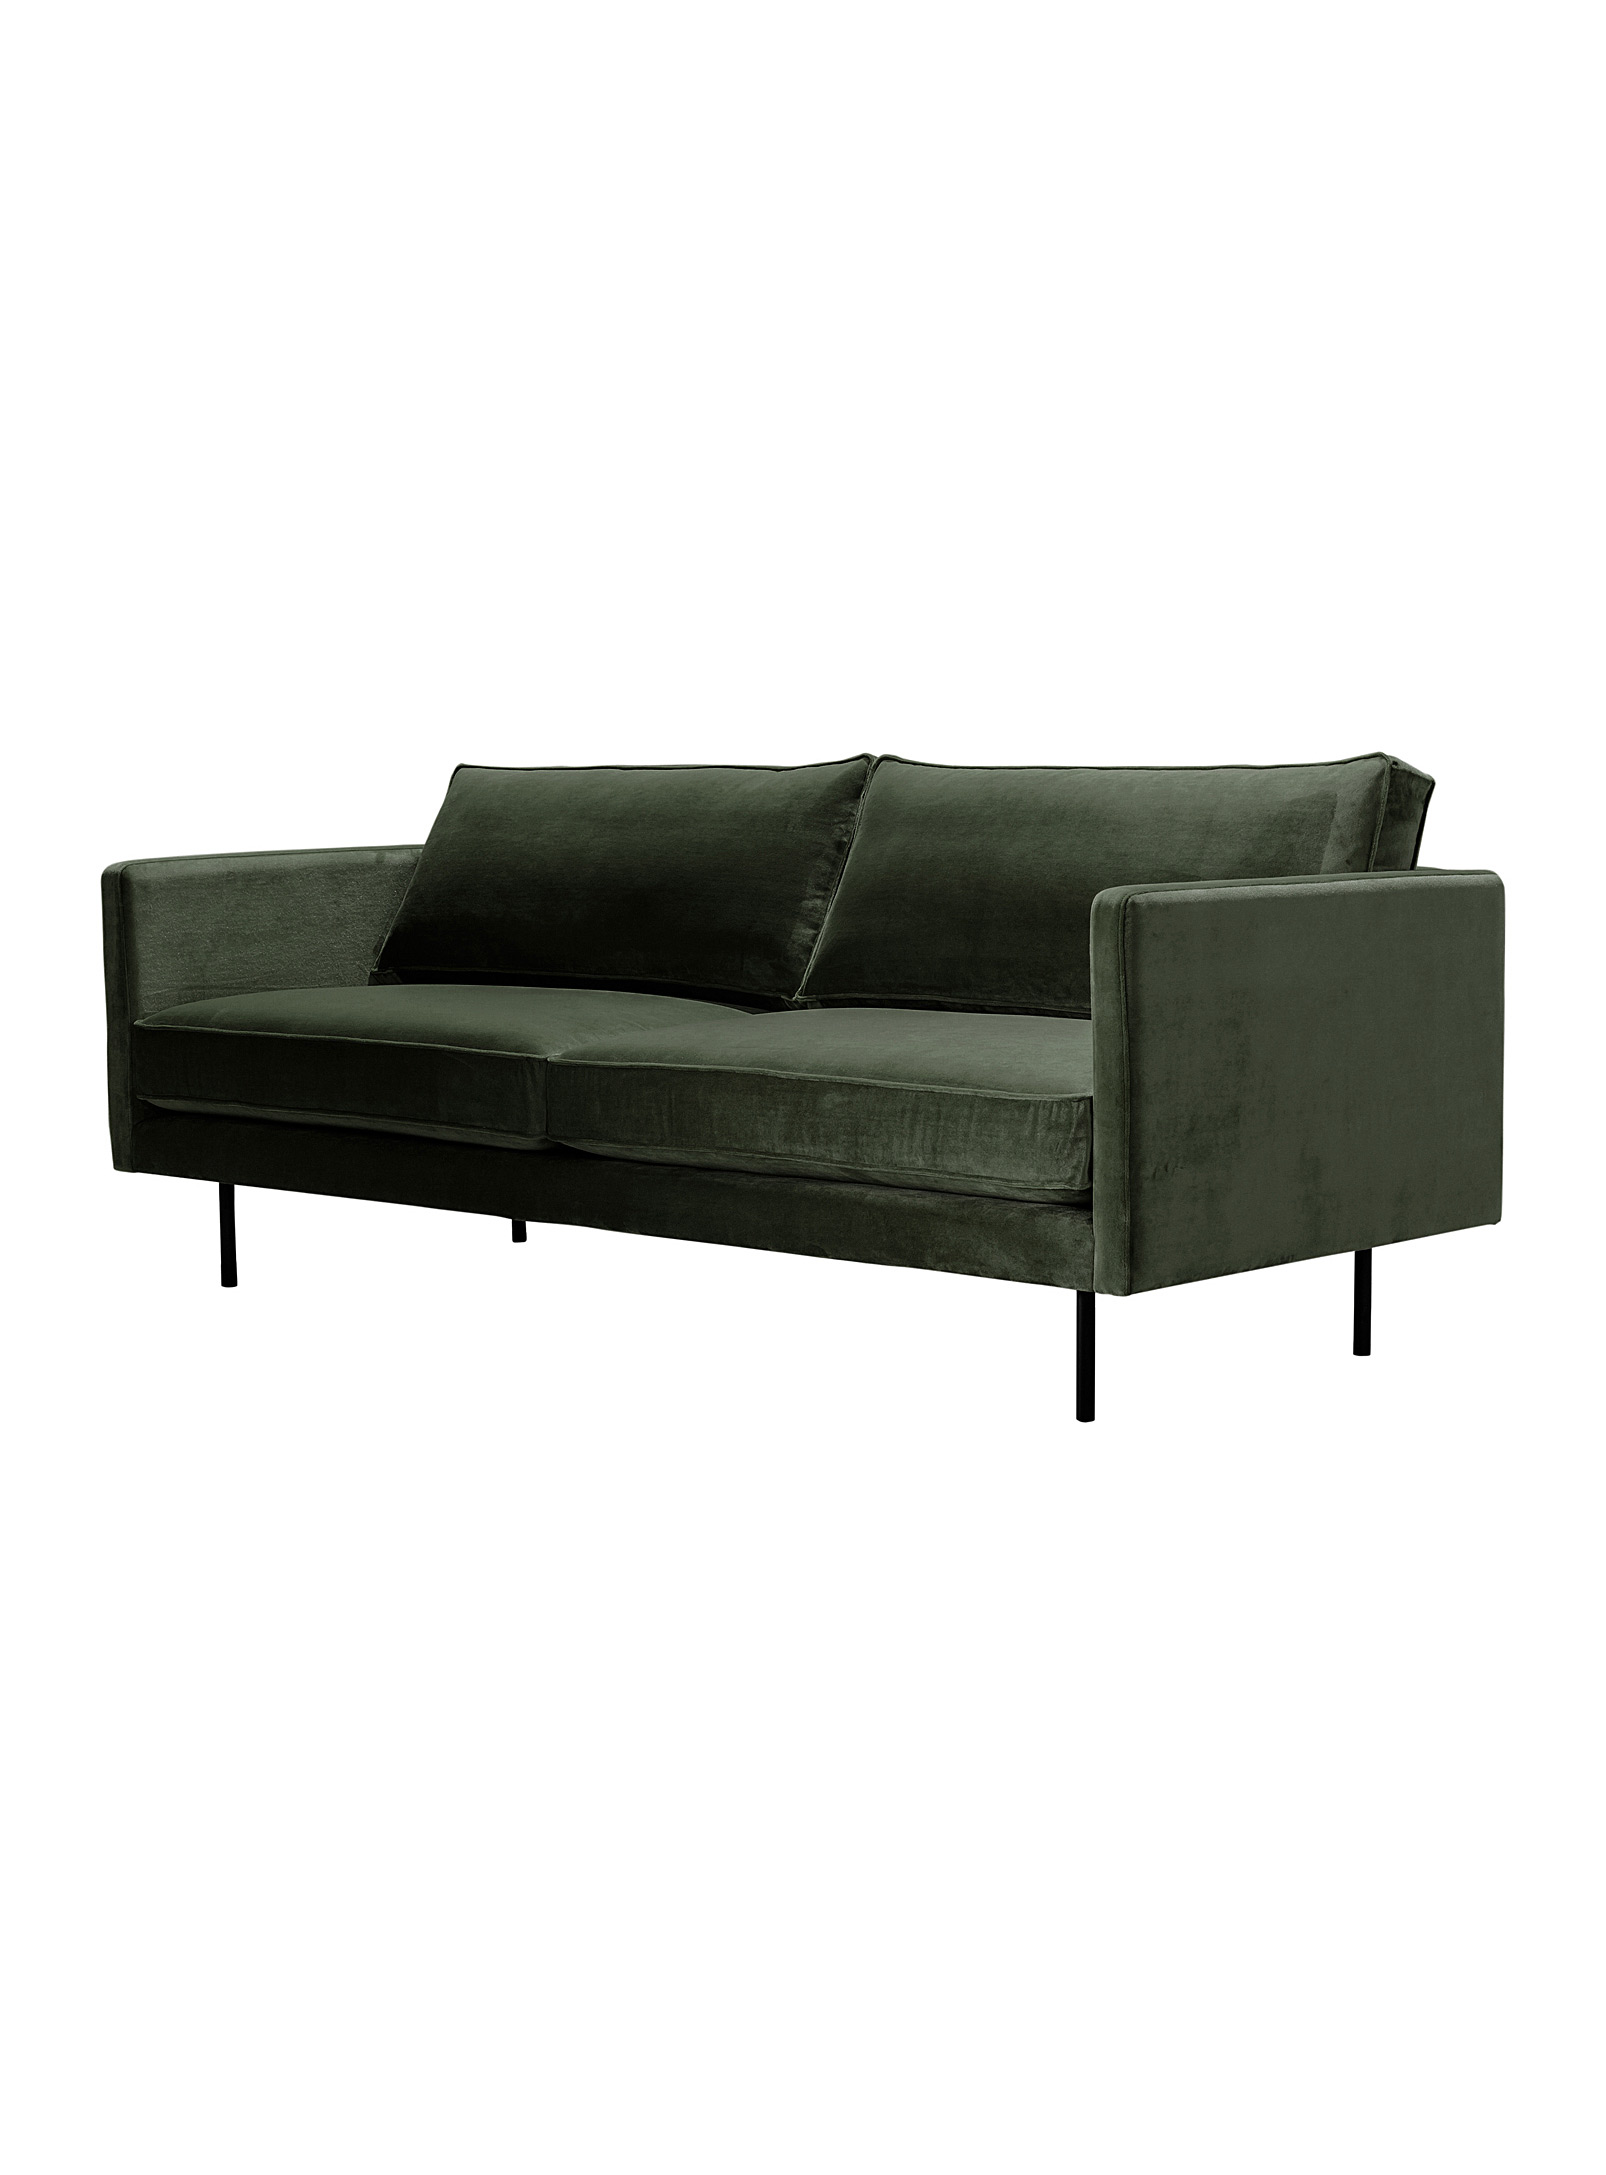 Moe's Home Collection - Le canapé minimaliste Raphael